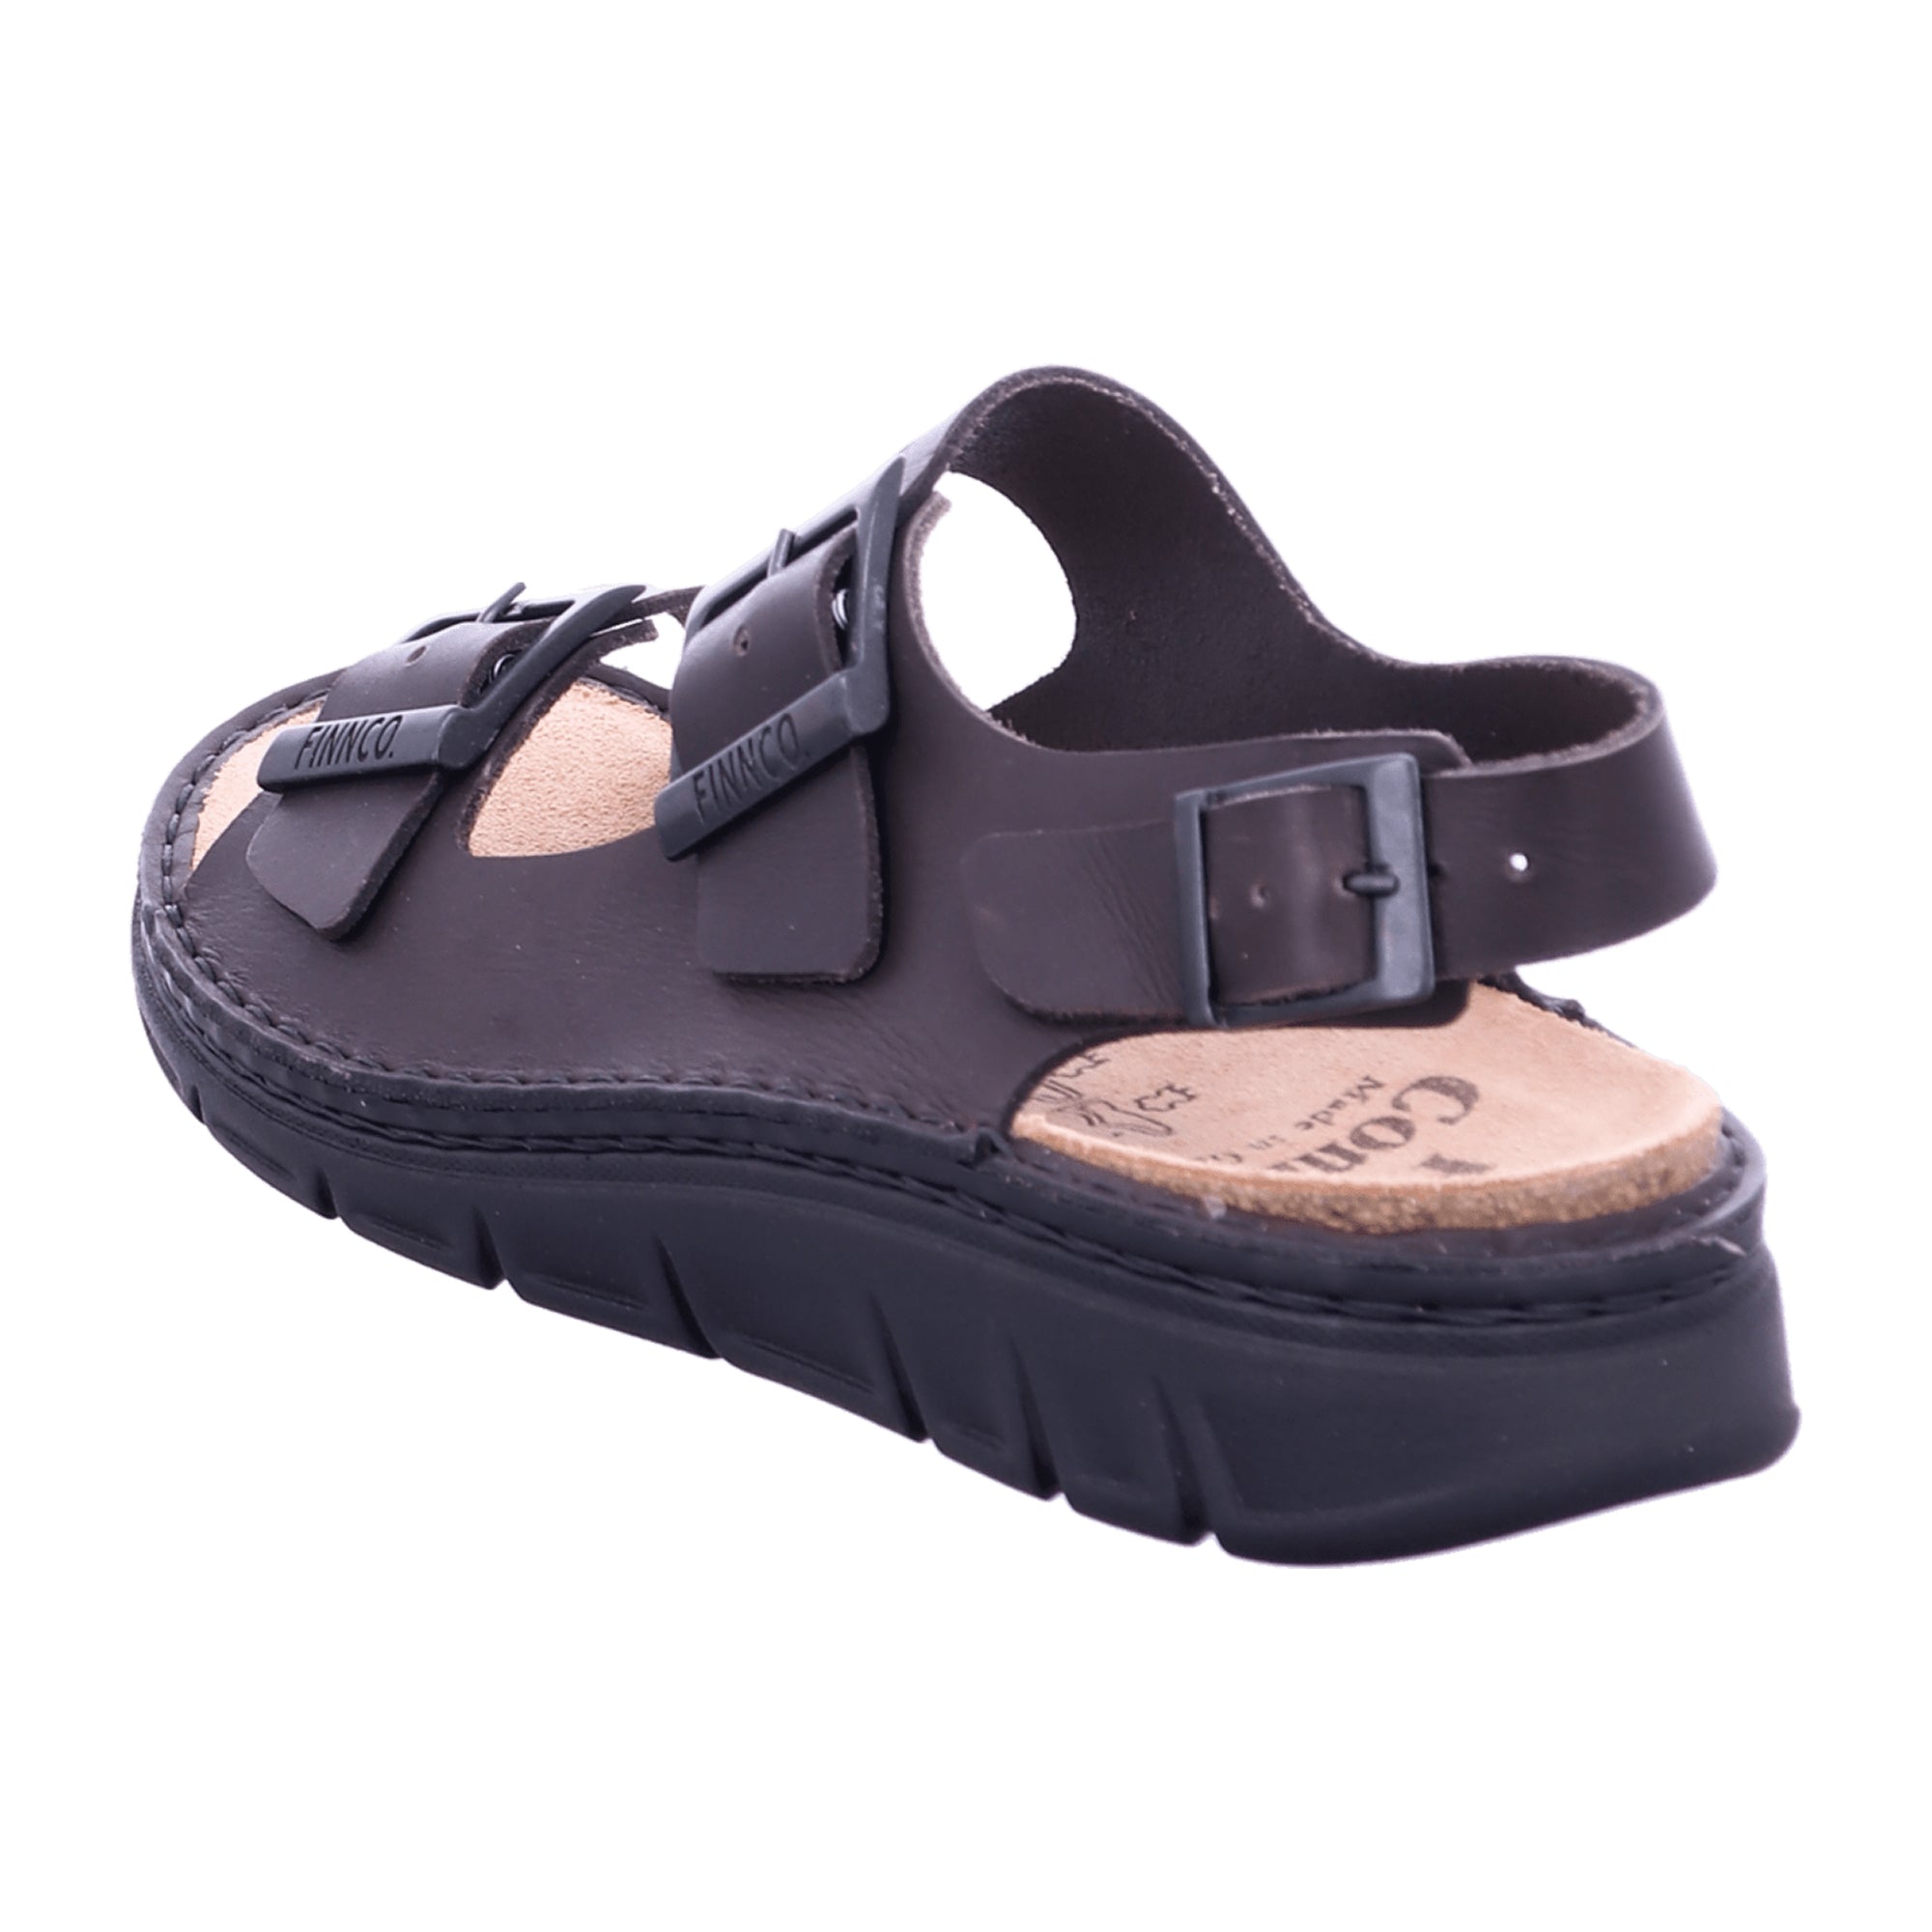 Finn Comfort Nevis-S Men's Comfort Sandals in Brown